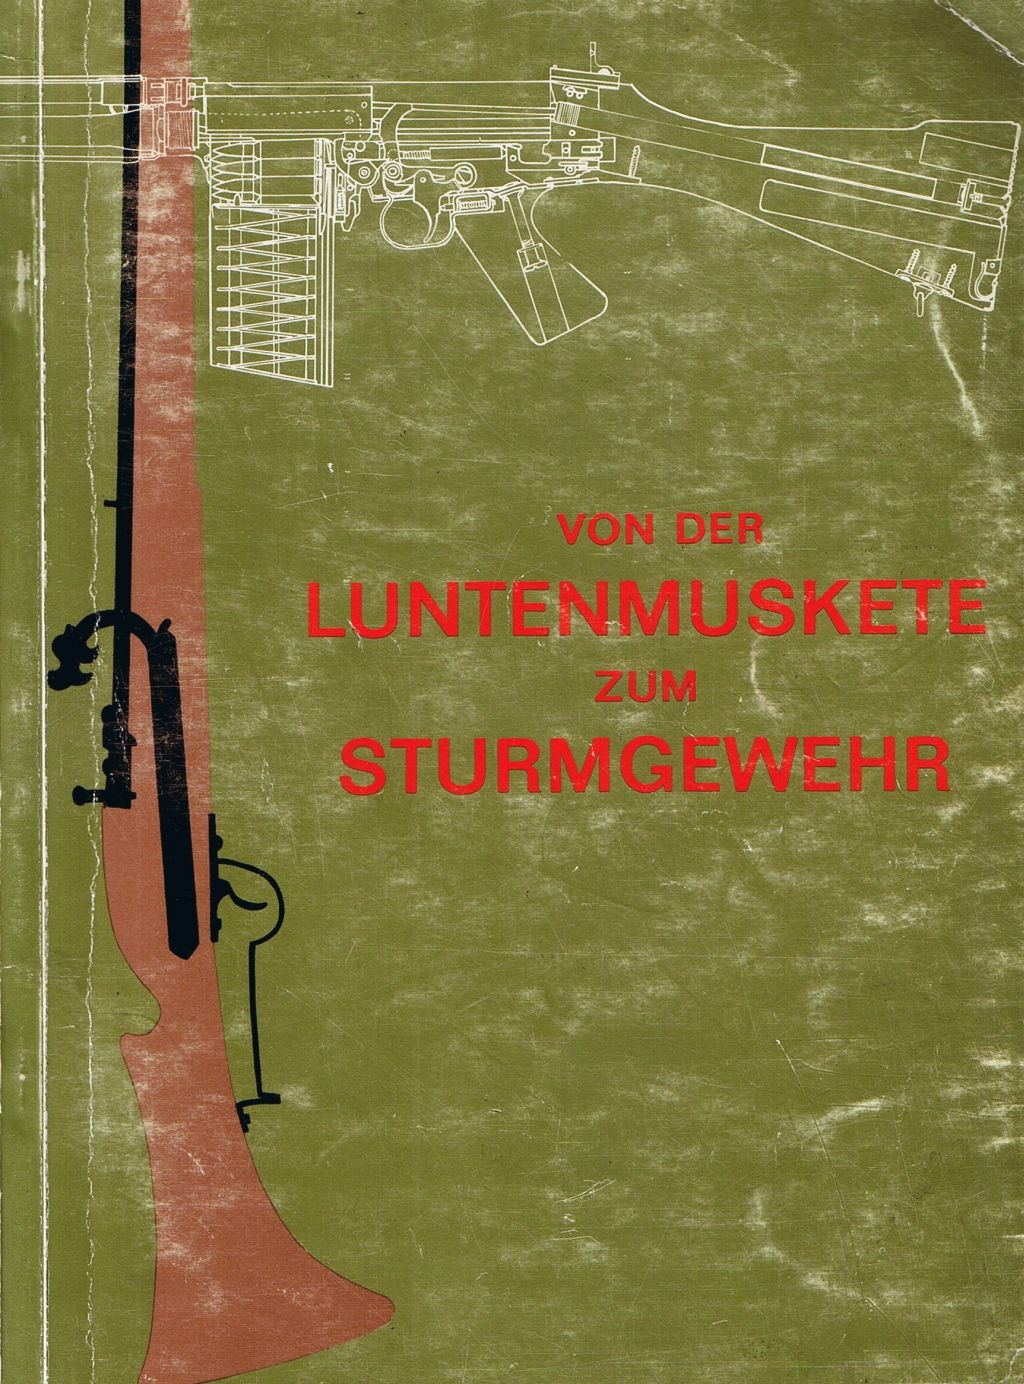 Von der Luntenmuskete zum Sturmgewehr, Katalog zur gleichnamigen Ausstellung im Heeresgeschichtlichen Museum Wien